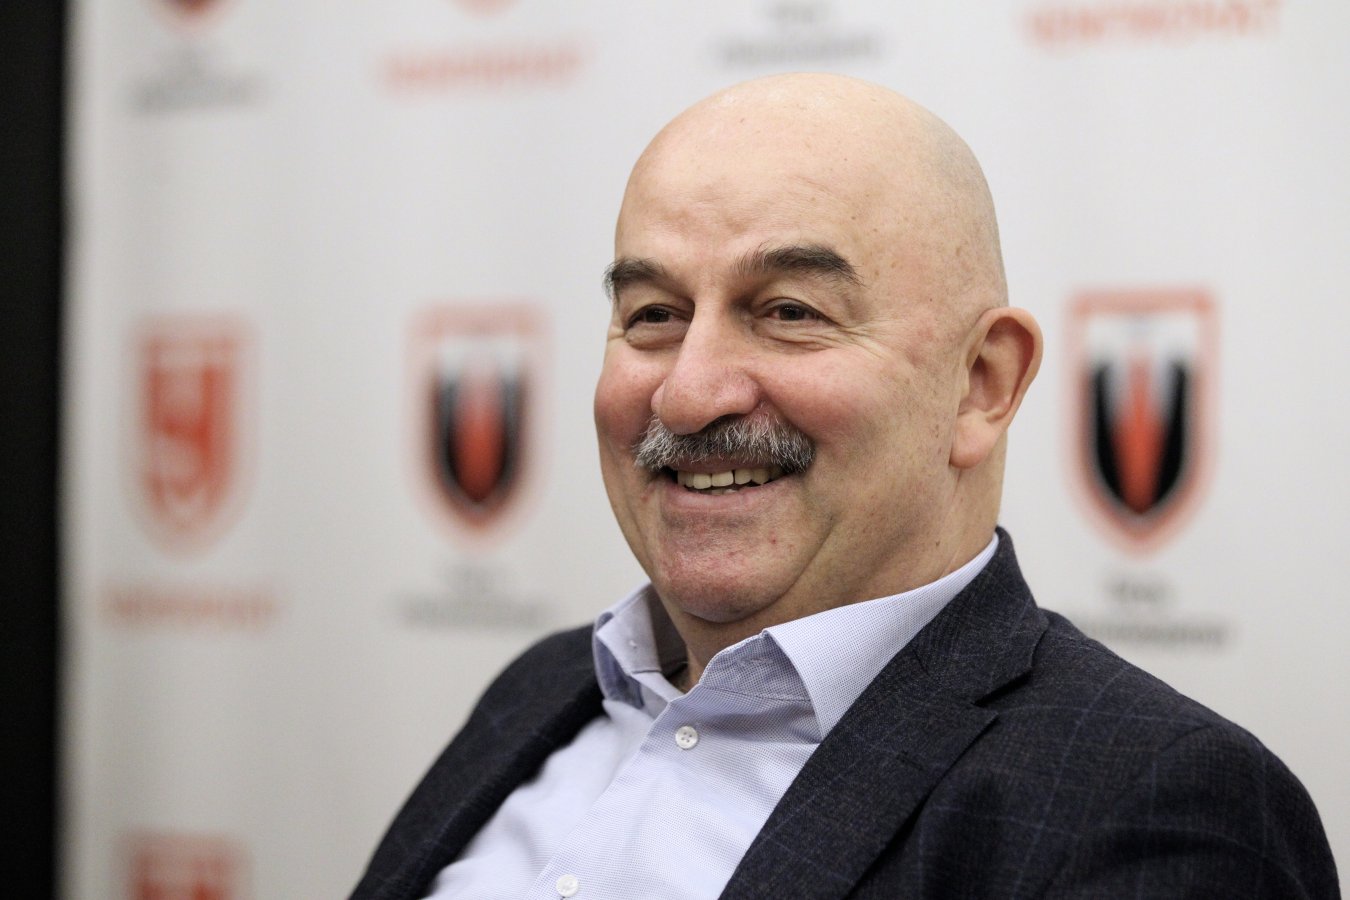 Станислав Черчесов прокомментировал первую победу на посту главного тренера «Ференцвароша»